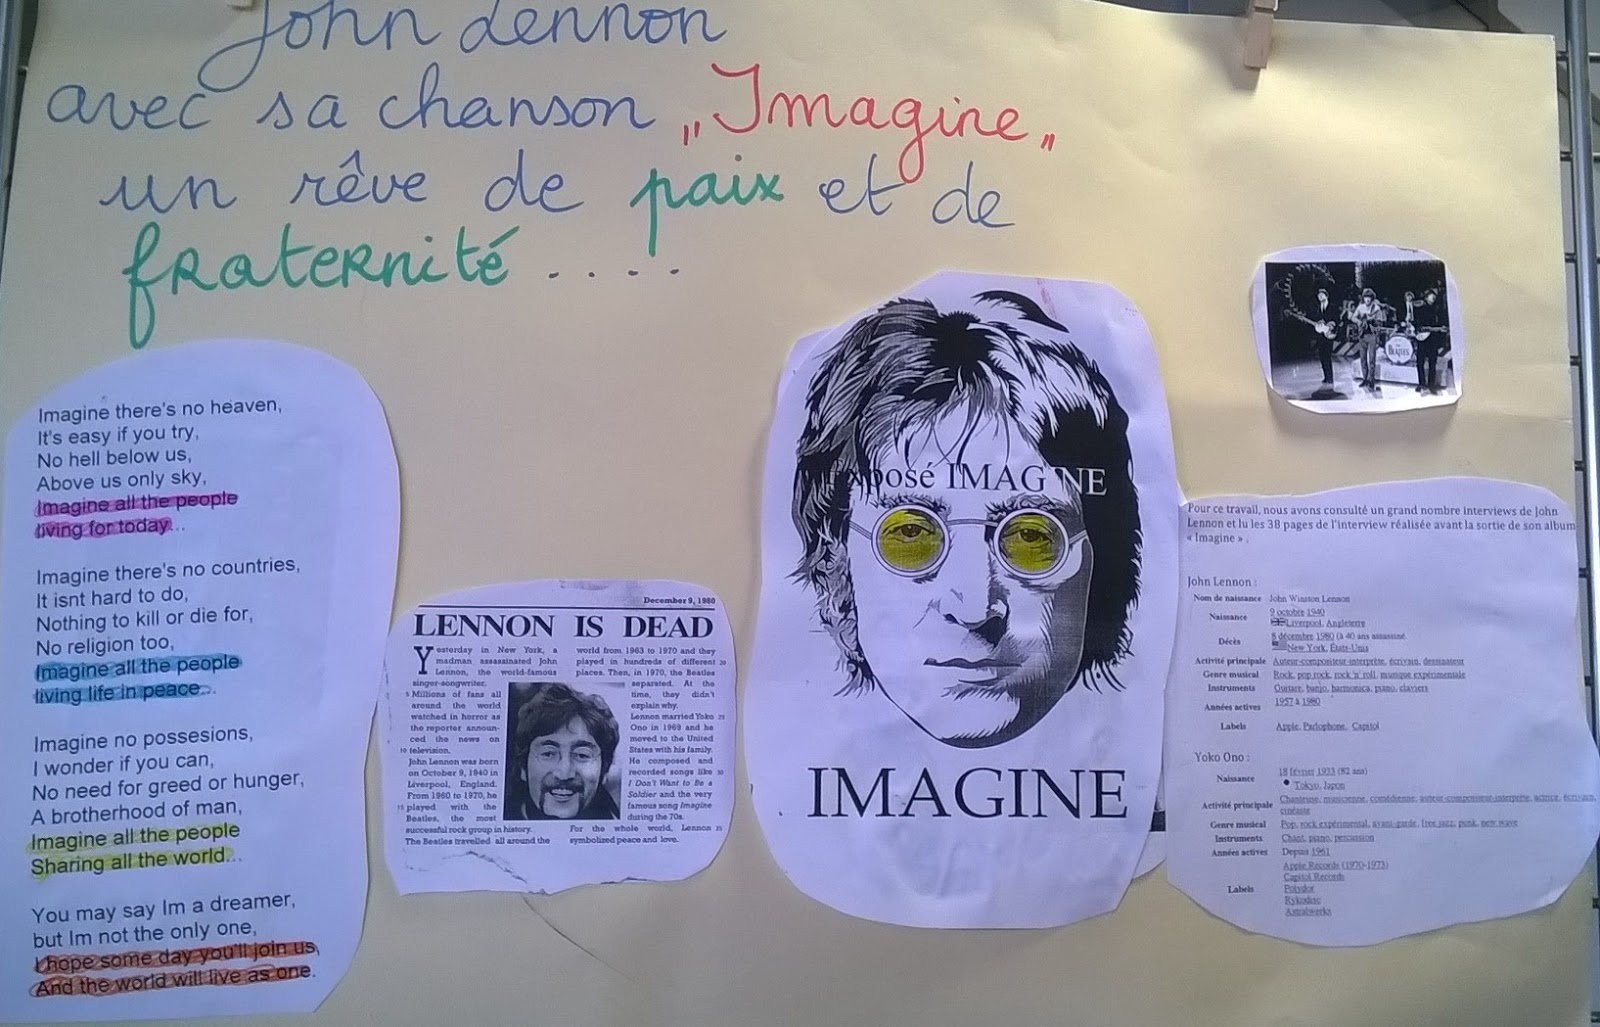 Traduction De La Chanson Imagine De John Lennon Traduction De La Chanson Imagine De John Lennon | AUTOMASITES